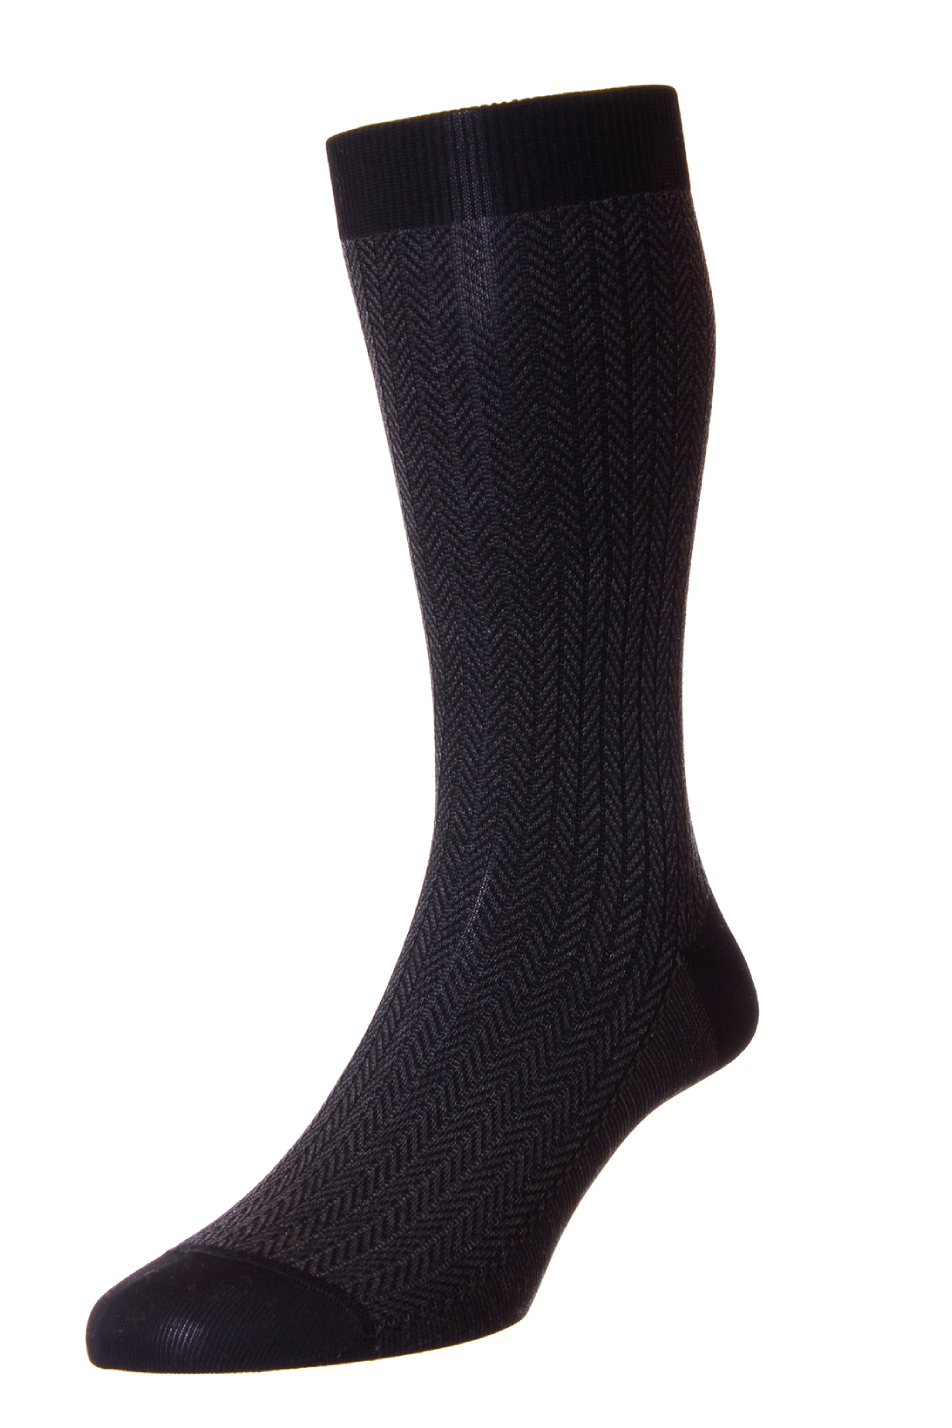 Pantherella Men's Fabian Herringbone Sock — Pants & Socks